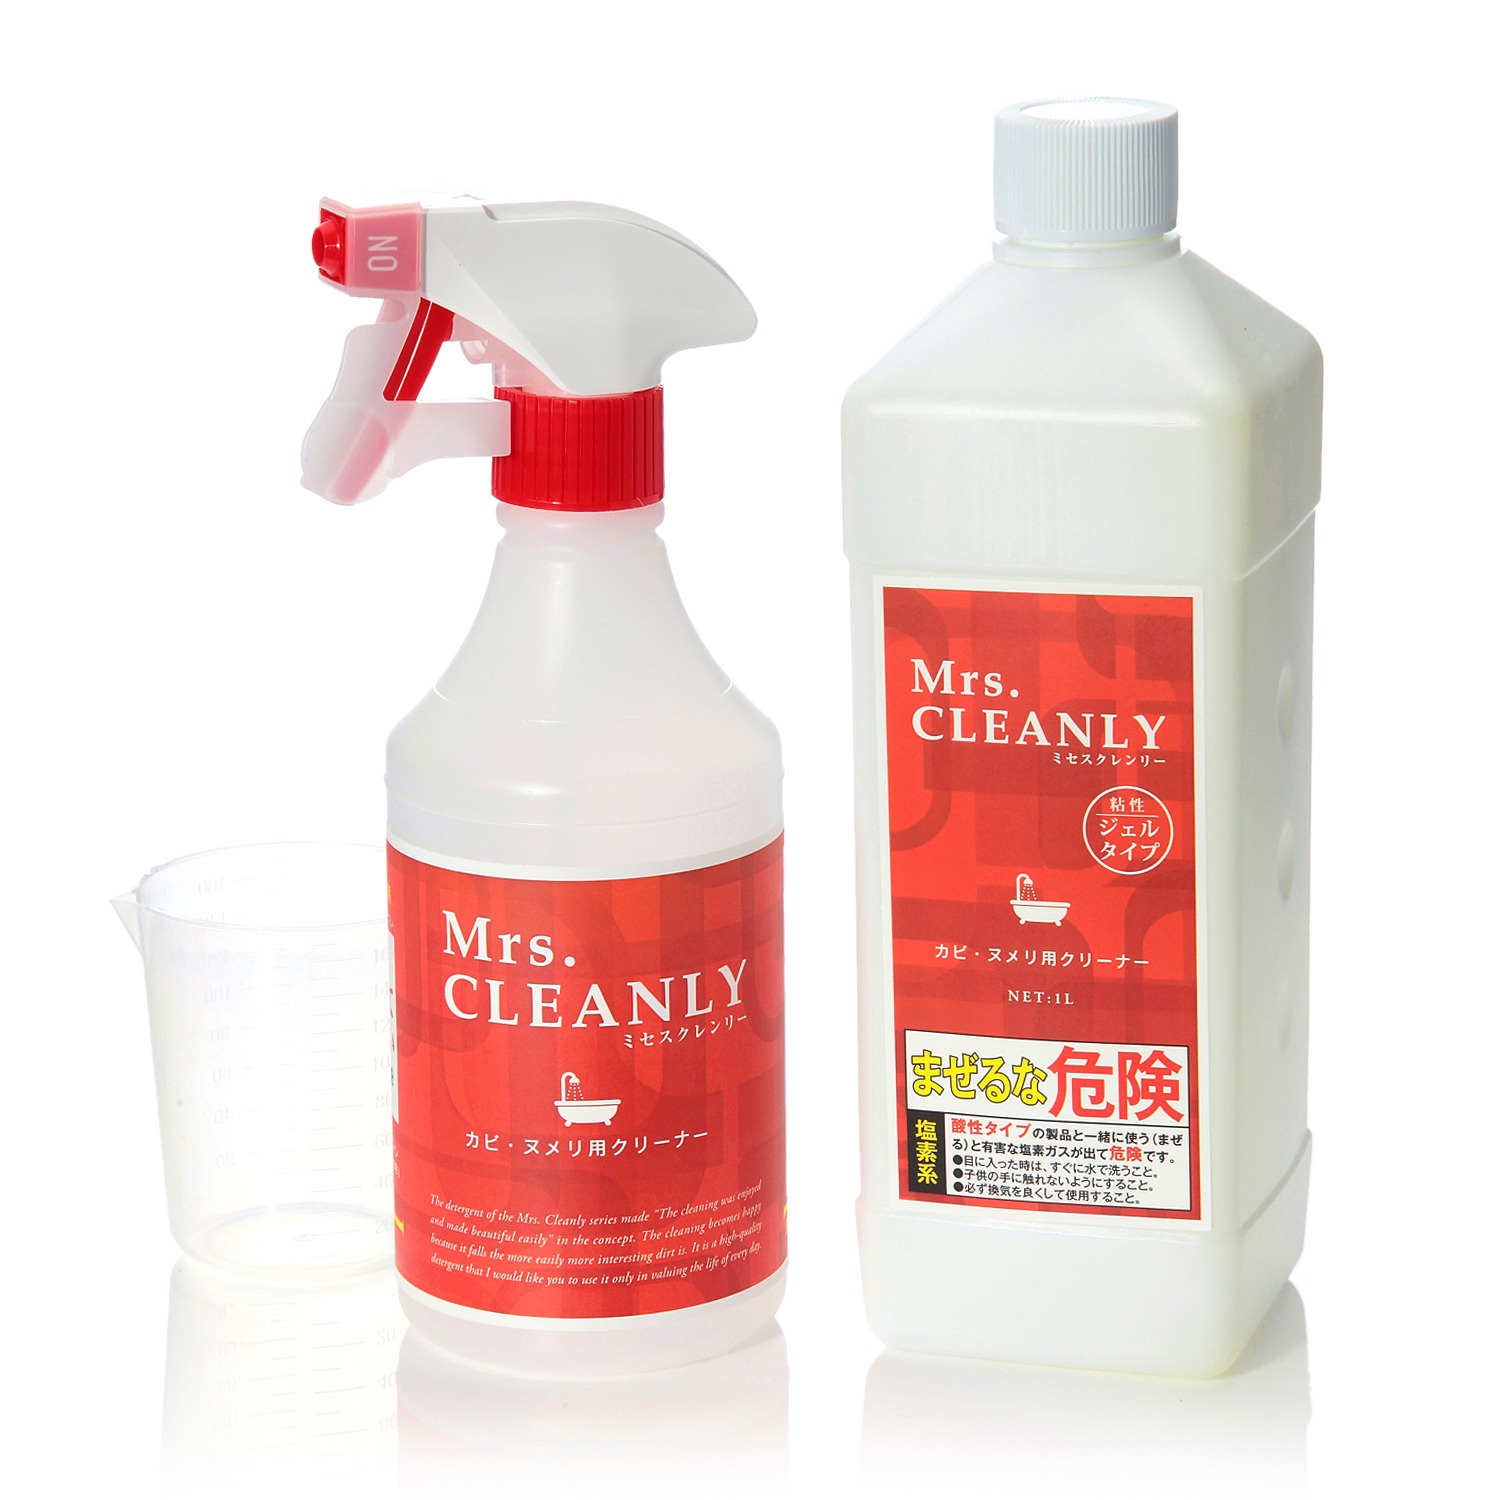 ミセスクレンリー　除菌もできる
ジェルタイプの洗浄剤
カビ・ヌメリ用クリーナー
トライアルセット